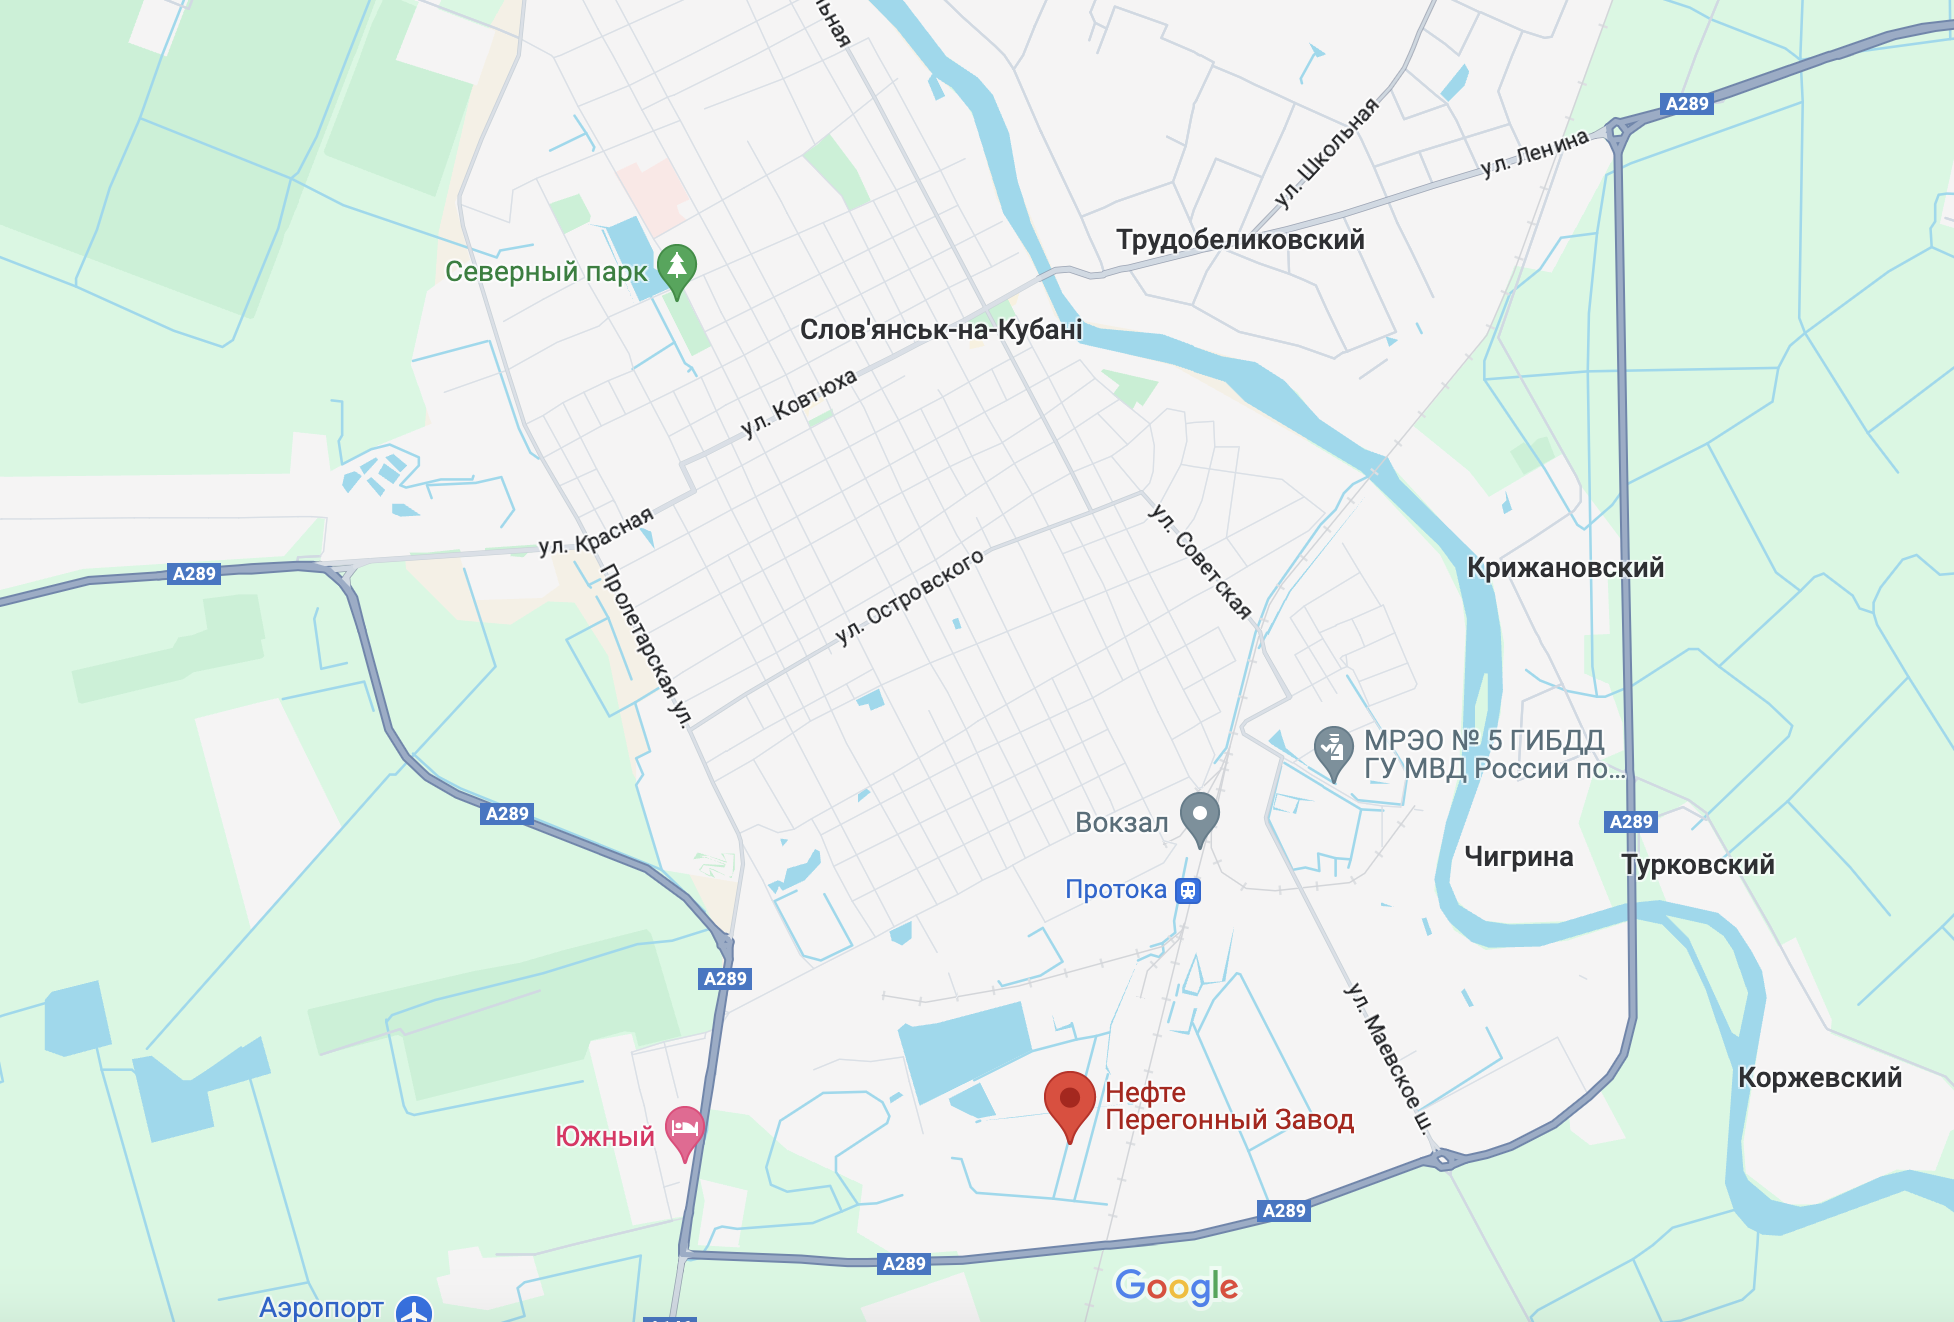 Drony zaatakowały Terytorium Krasnodarskie Federacji Rosyjskiej: po eksplozjach zapaliła się rafineria. Wideo